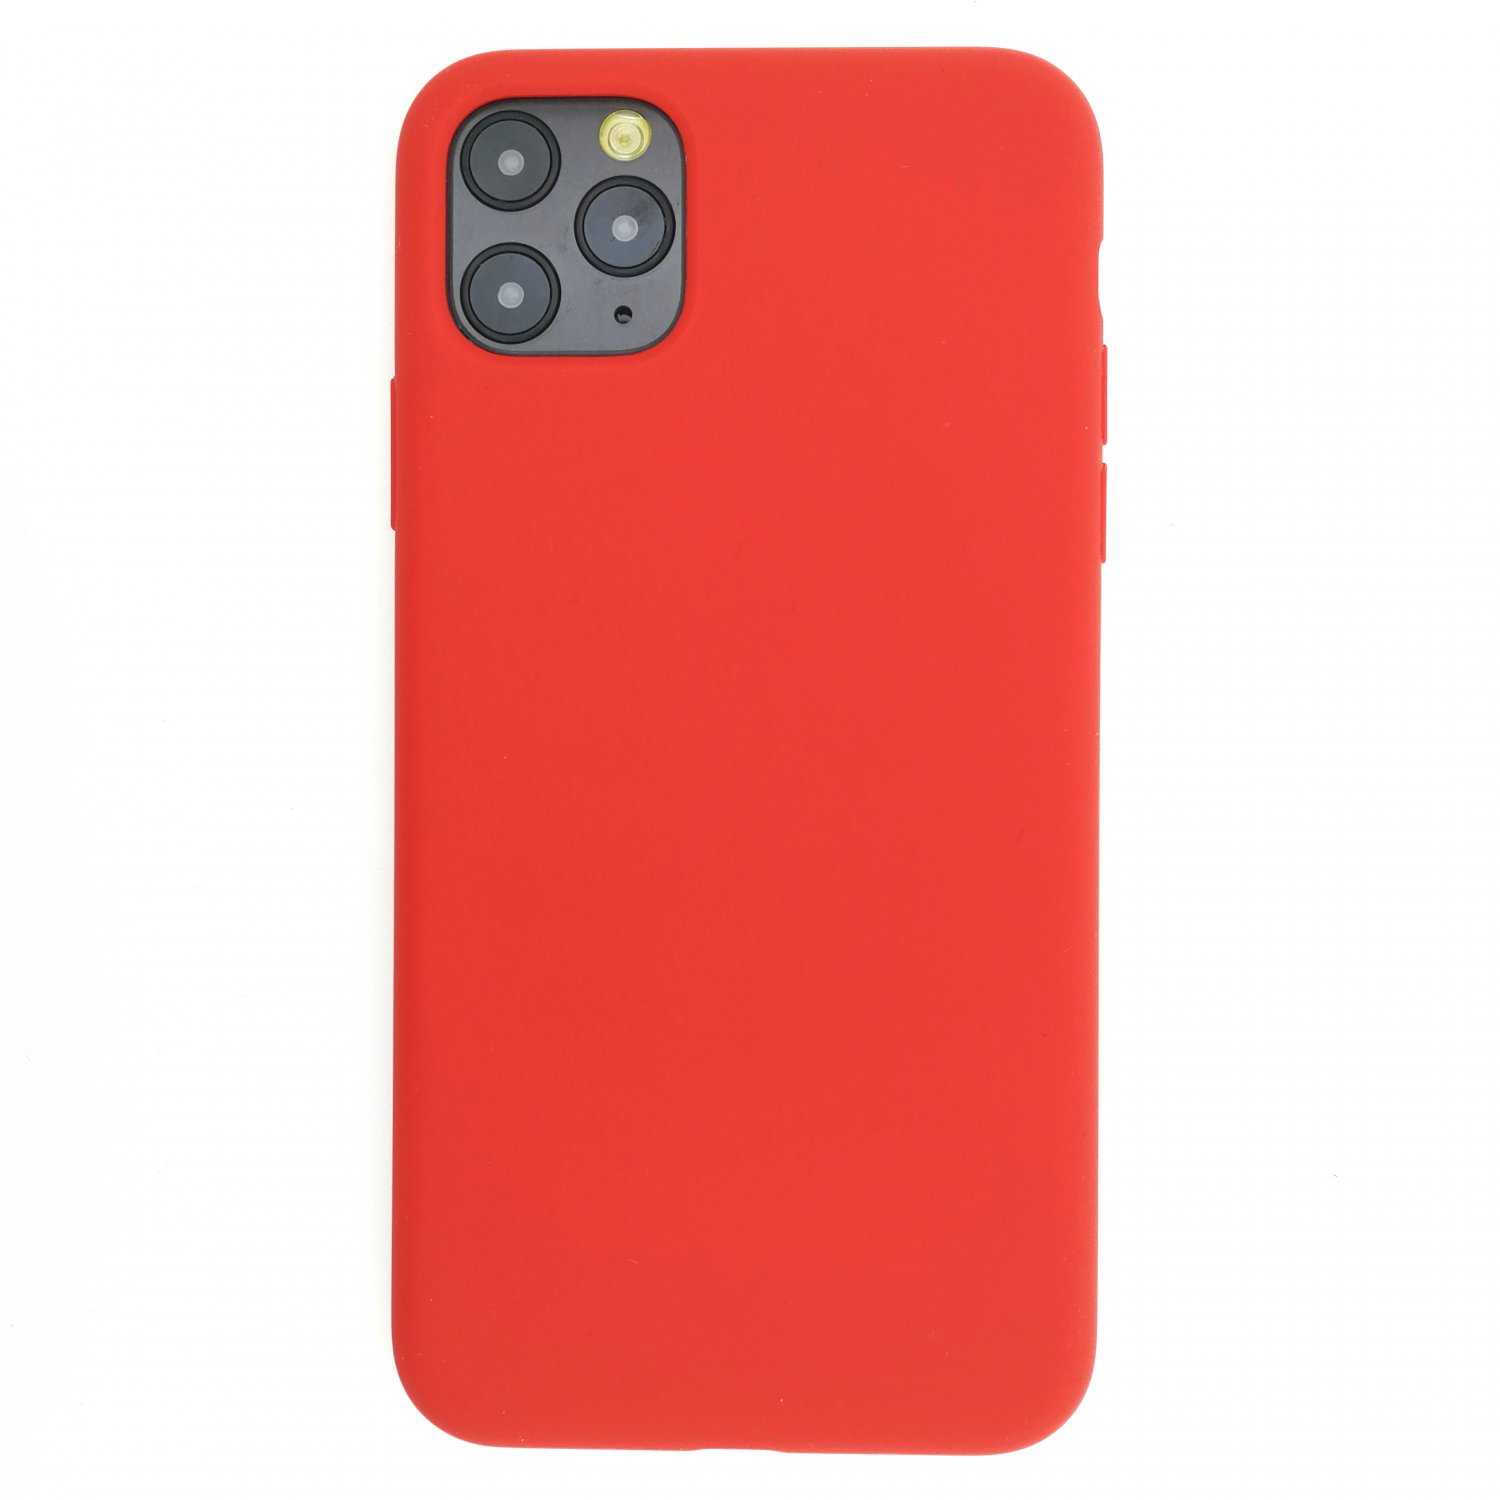 Силиконовый чехол для iPhone 11, цвет «розовый грейпфрут»